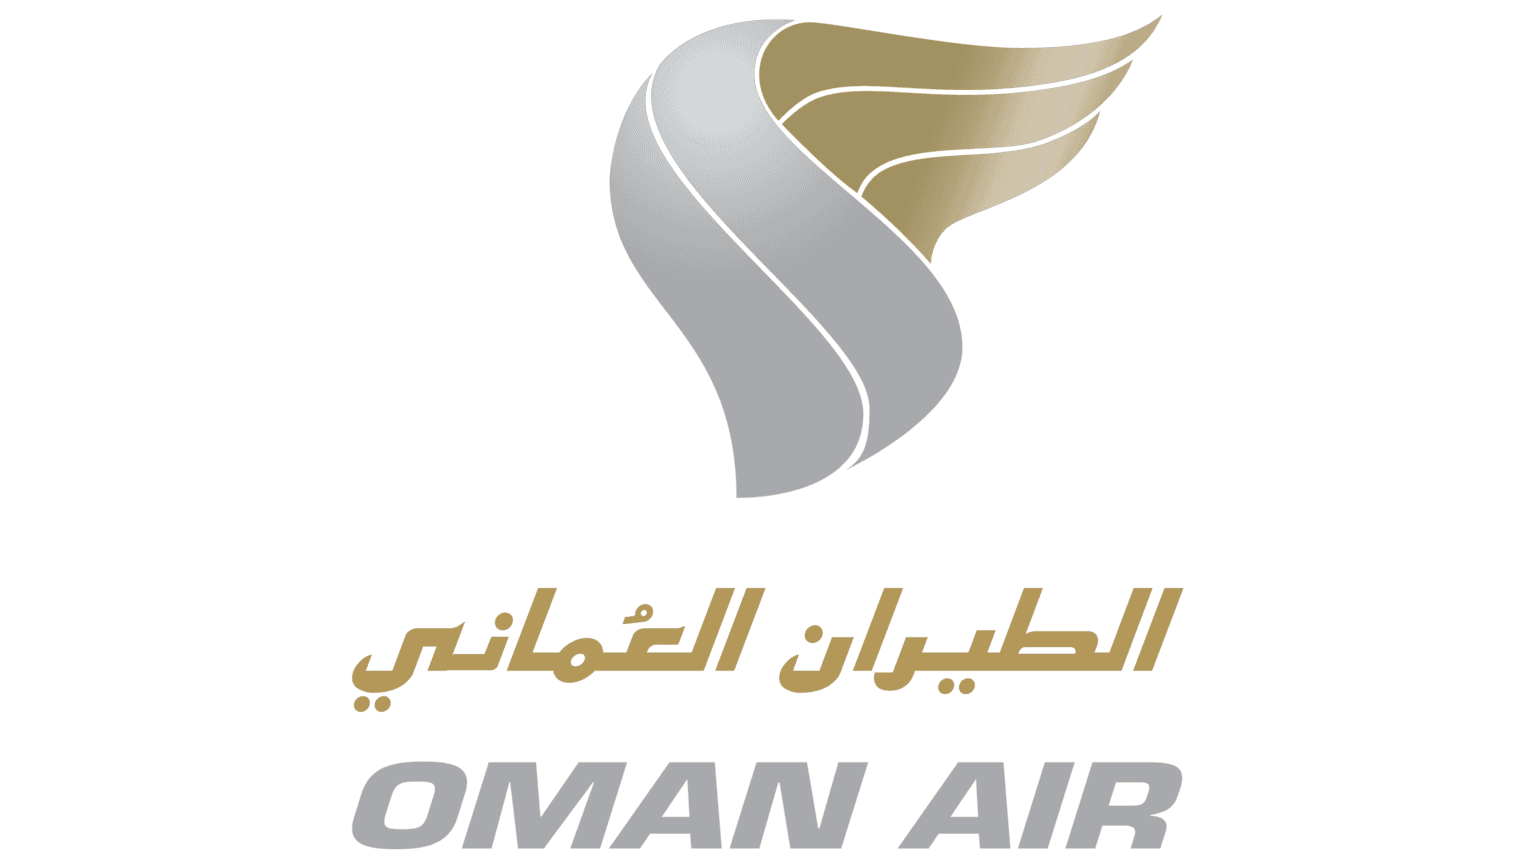 Die Reise wurde ermöglicht durch die freundliche Unterstützung von Oman Air.